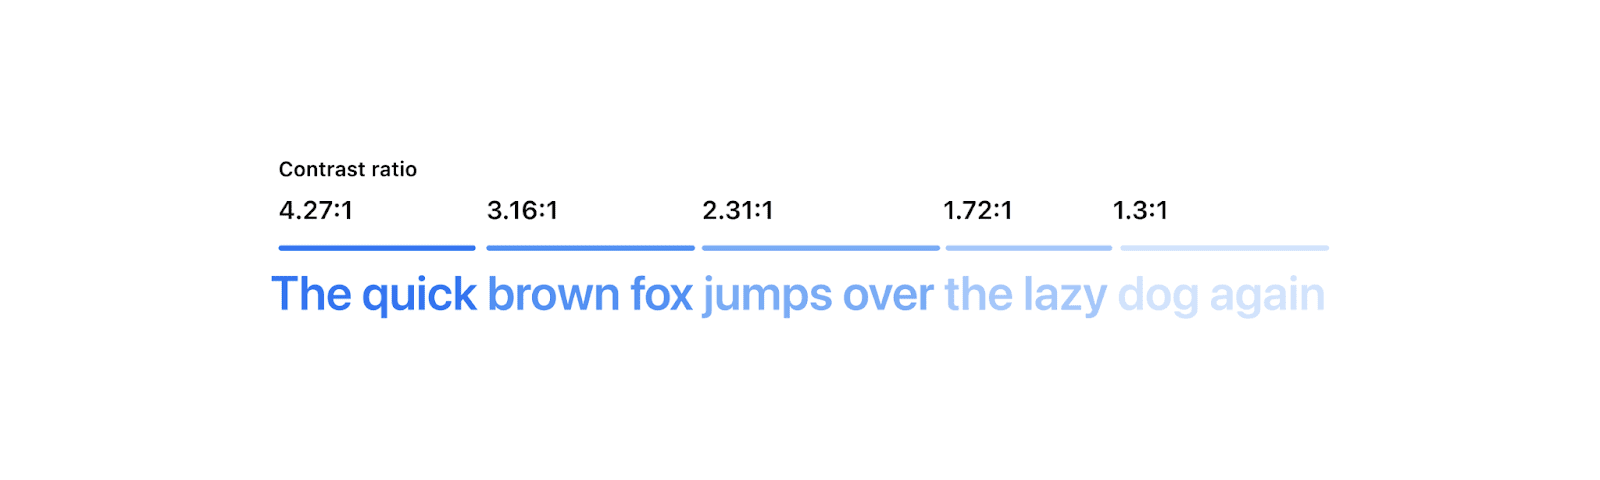 短语“The quick brown fox jumps over the lazy dog again”便可见，其中每个单词或两个单词都以浅蓝色显示。每个逐渐淡化的字词上方是其对比度分数。最后几个字词的对比度较低，非常难以阅读。